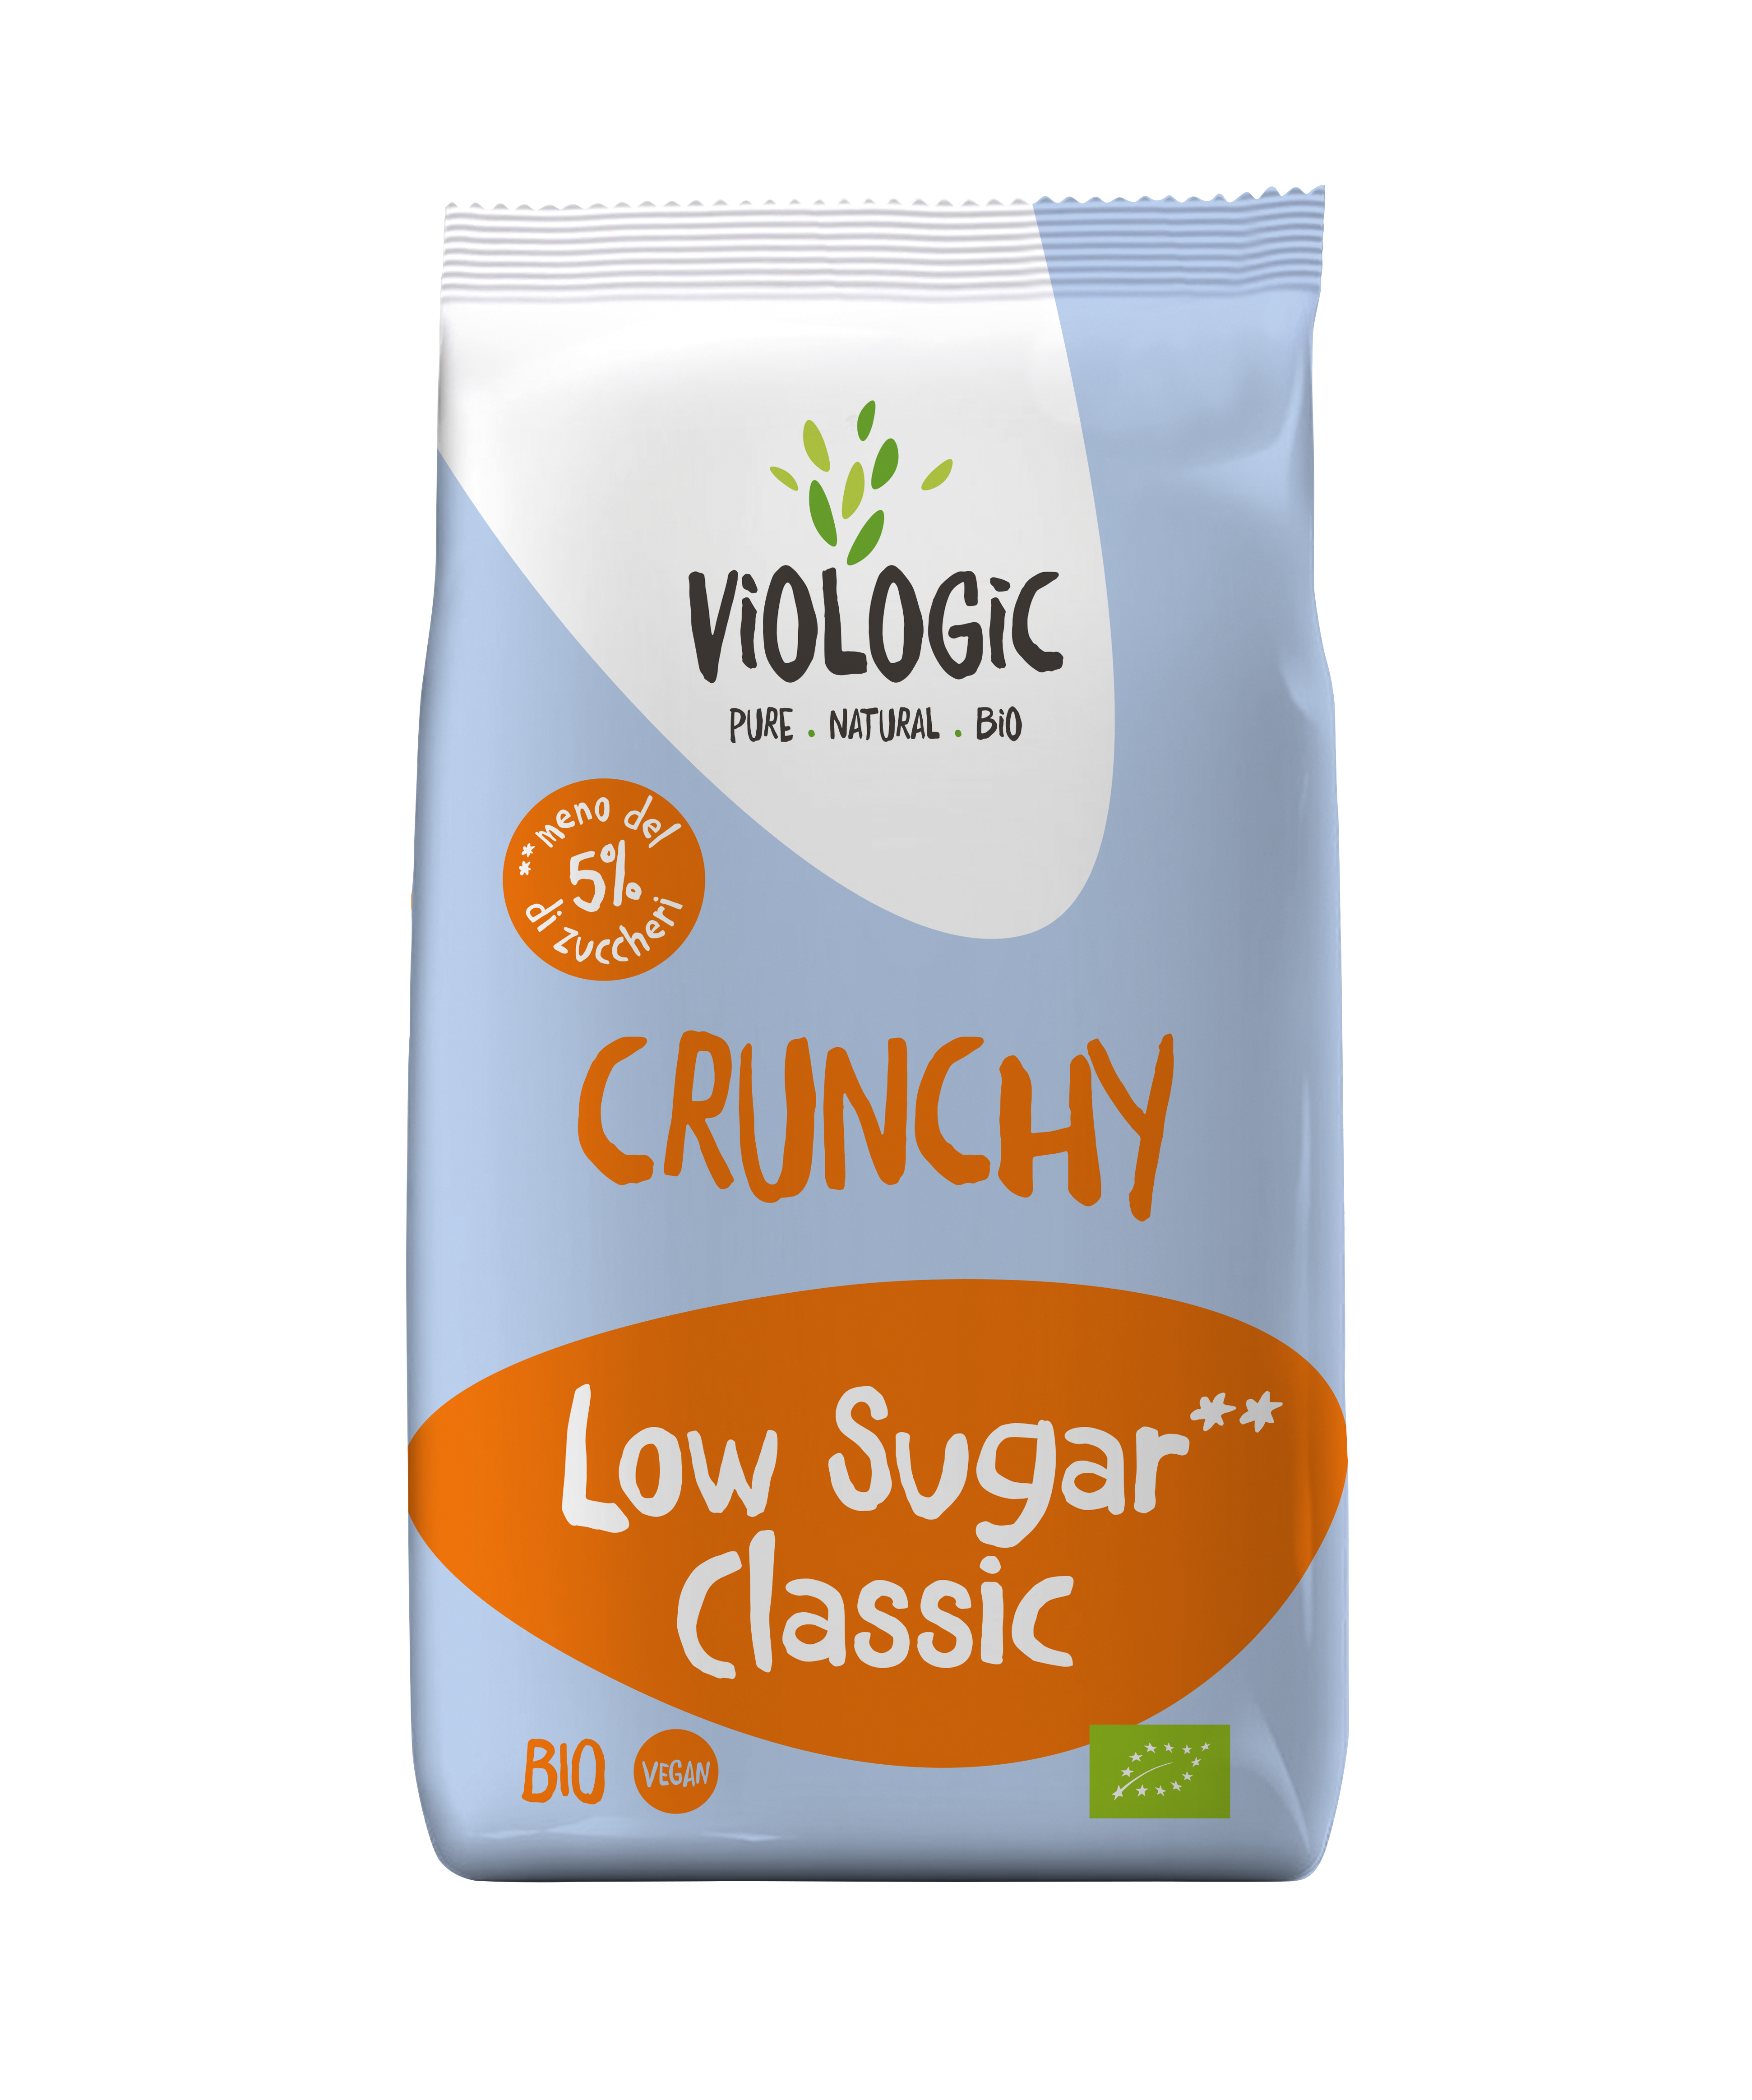 Viologic Crunchy LOW SUGAR Classic Bio 375g